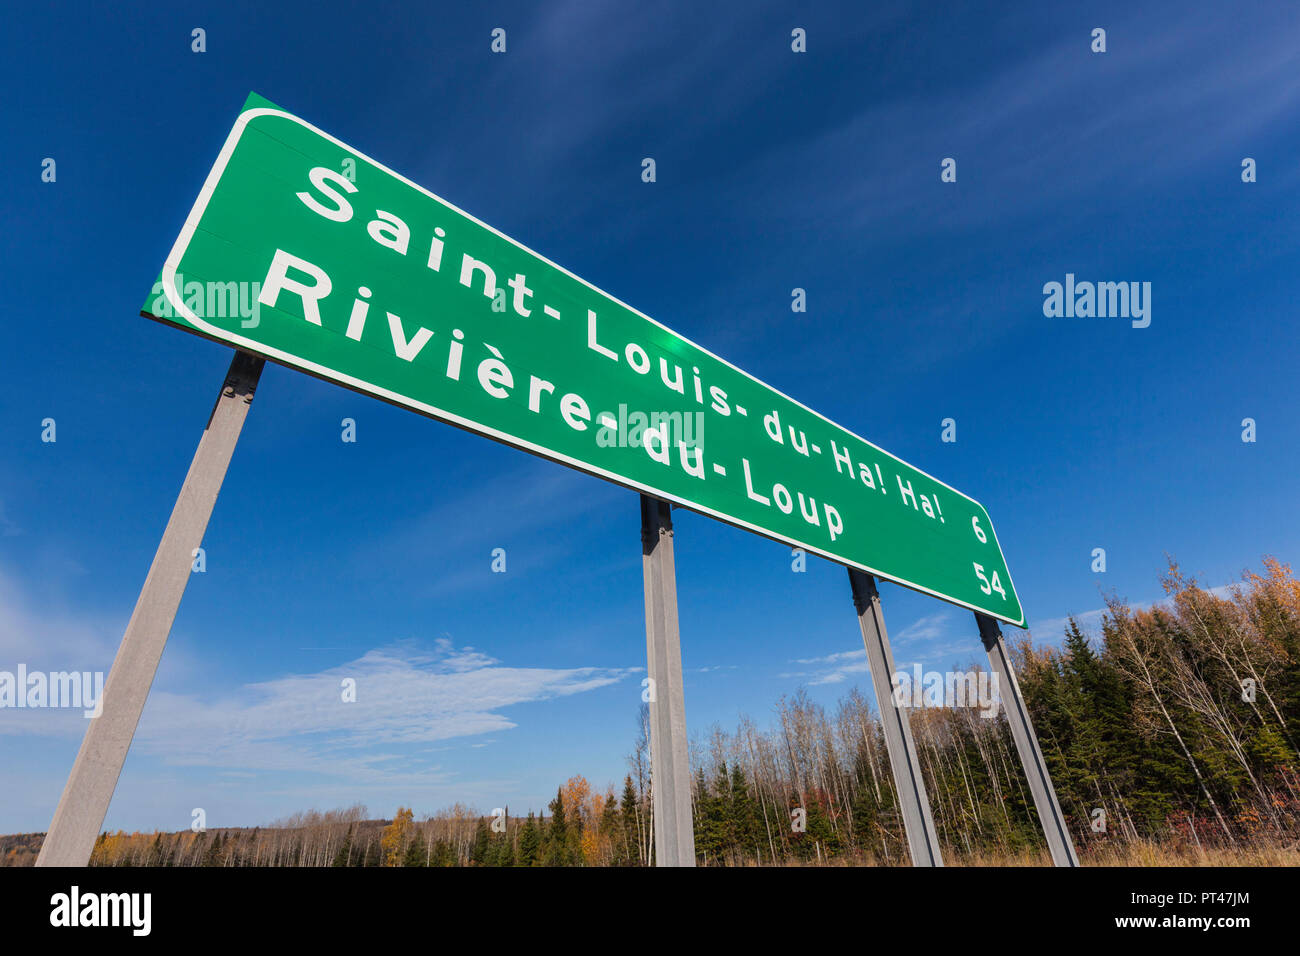 Canada Quebec, Bas-Saint-Laurent Regione, St-Louis de ah ah!, città cartello stradale Foto Stock